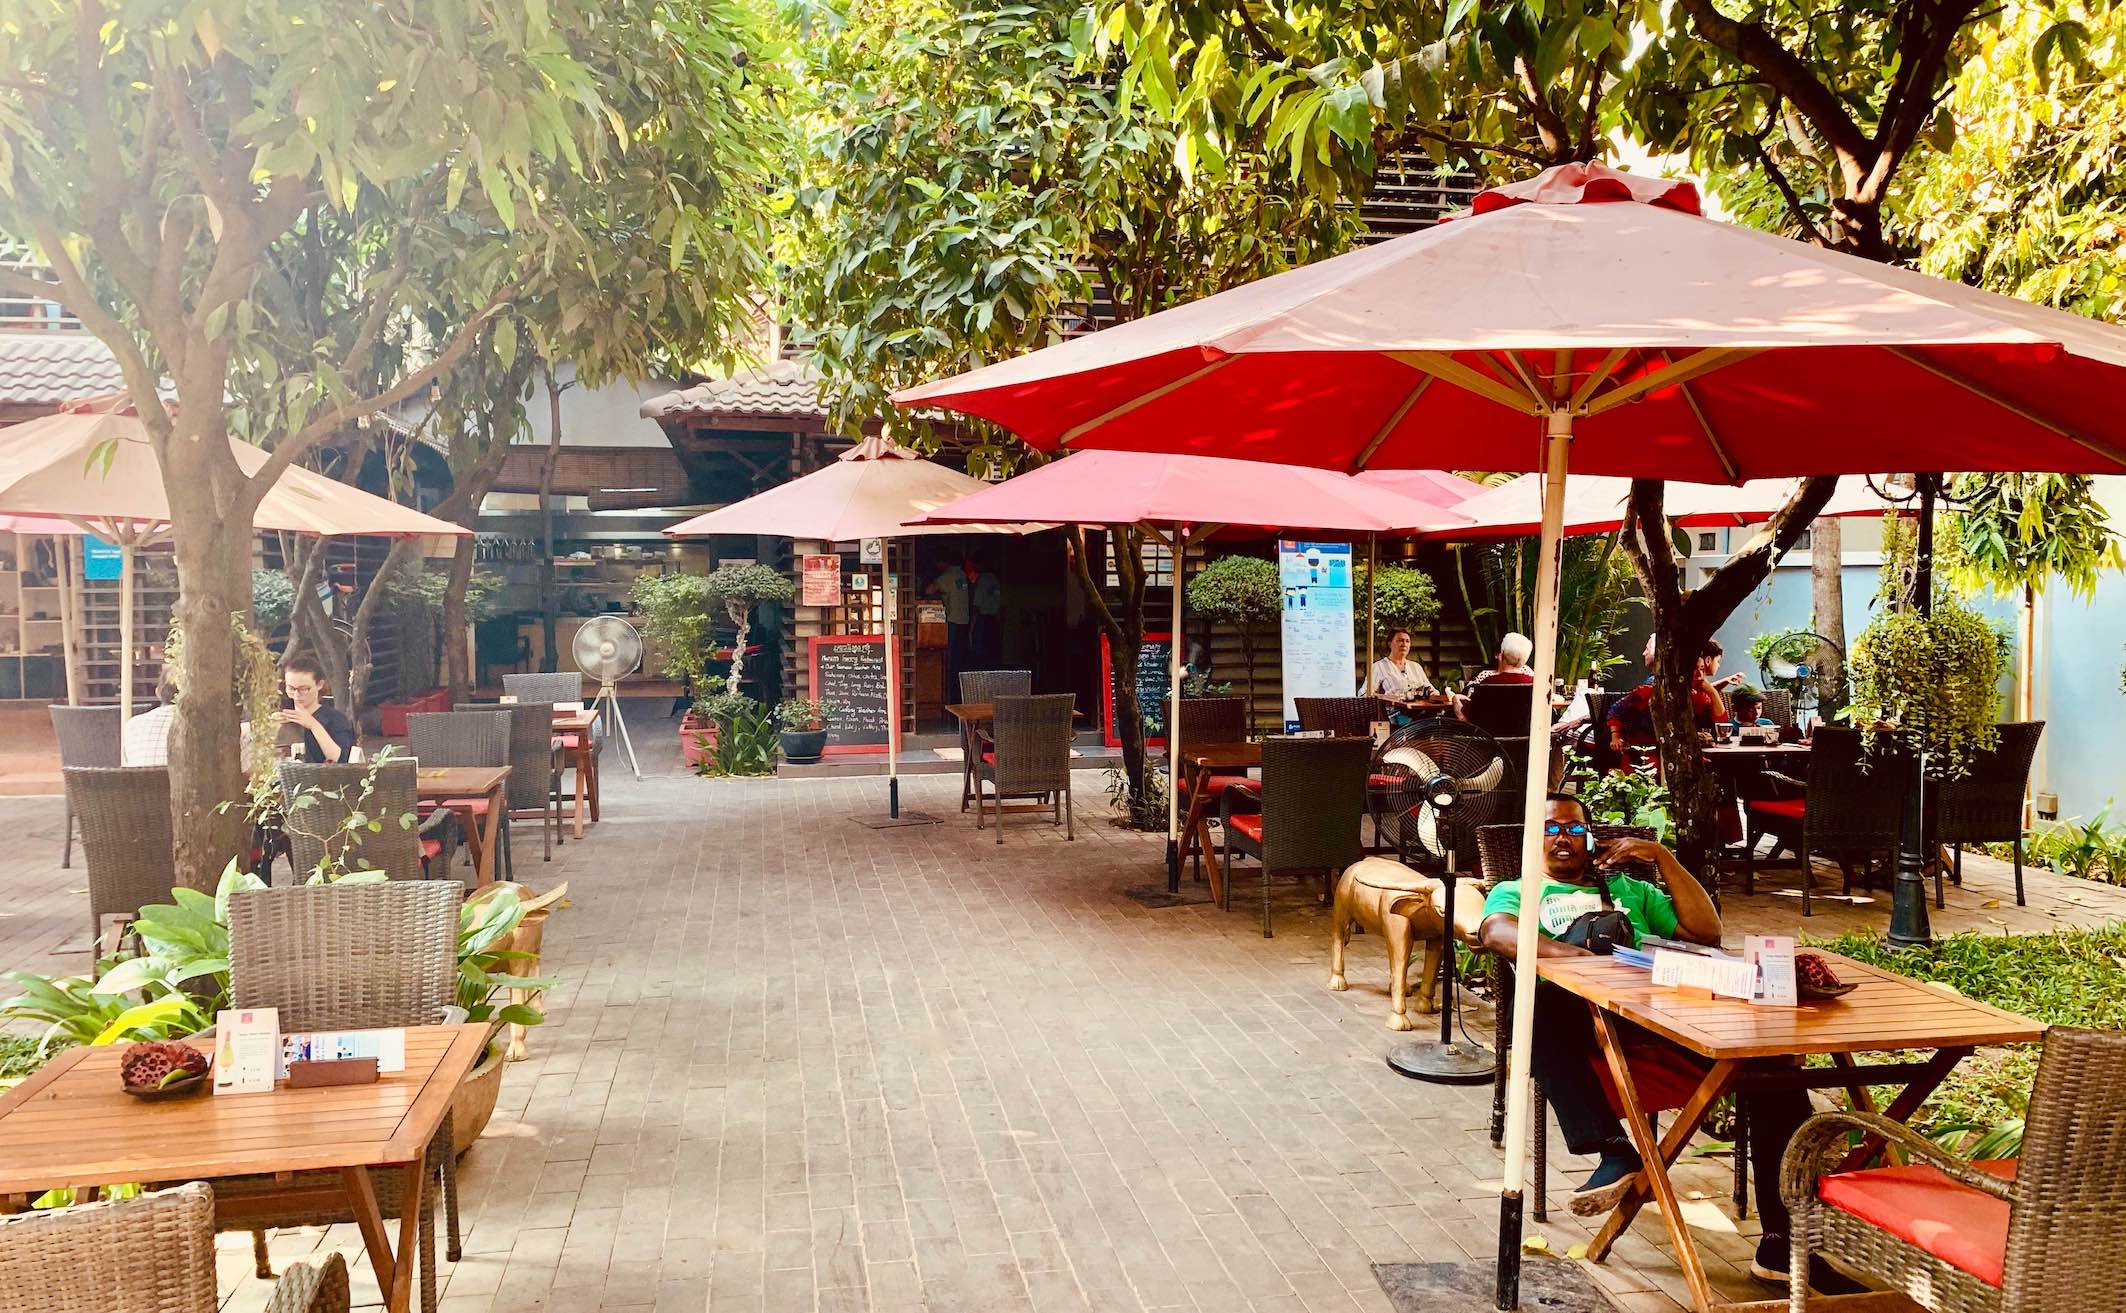 A visit to Marum Restaurant in Siem Reap